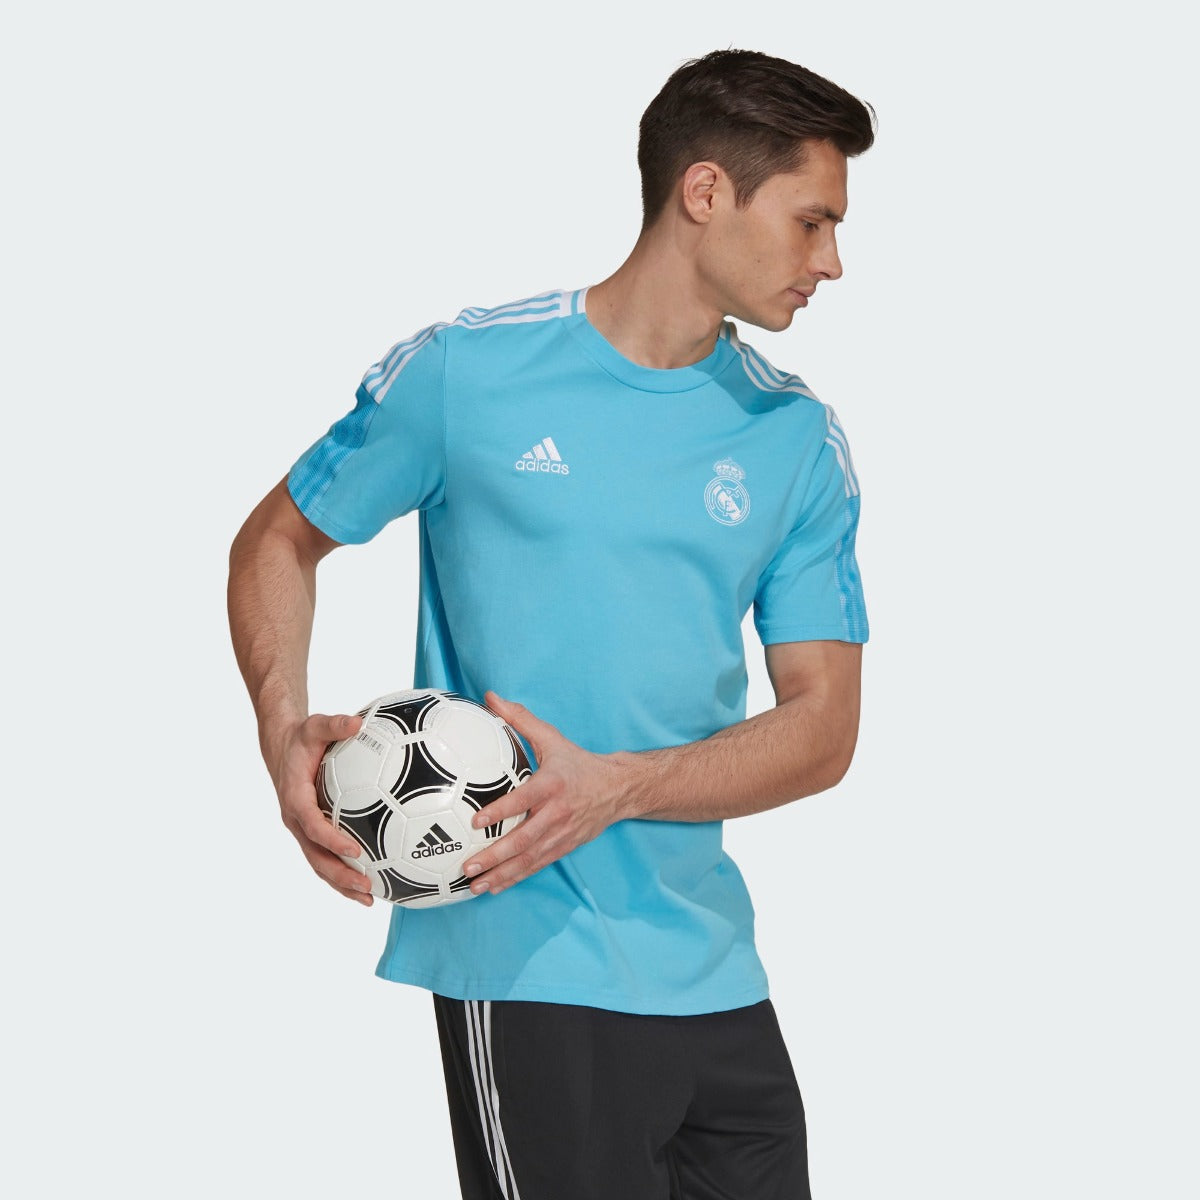 Adidas 2021 Real Madrid Tee Shirt - Bright Cyan (Model Front)